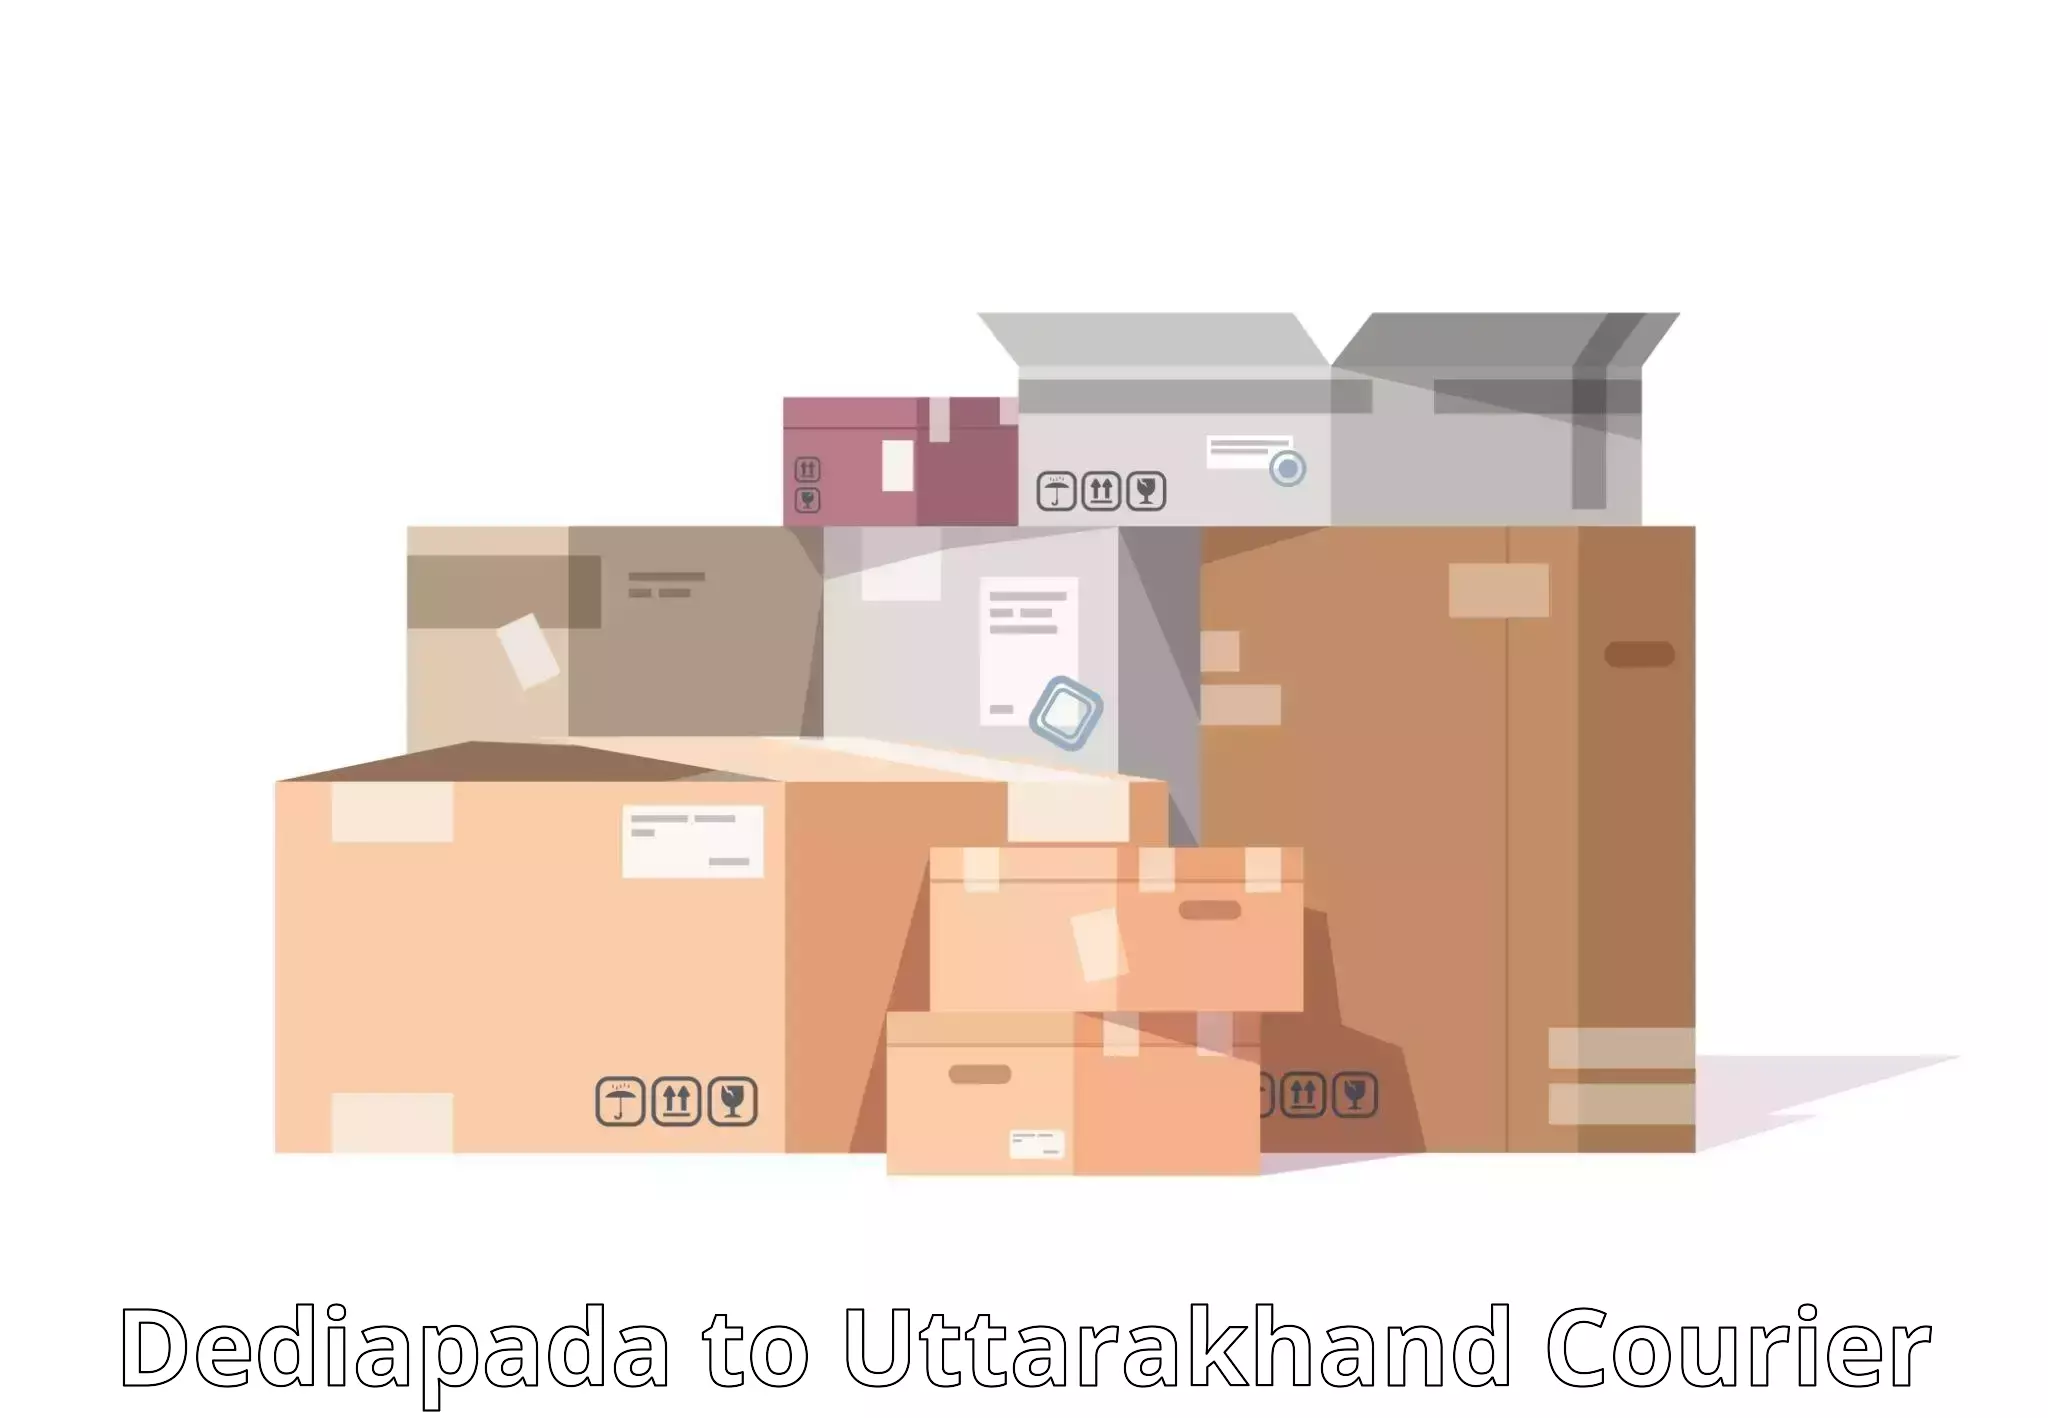 Efficient cargo handling in Dediapada to Rishikesh